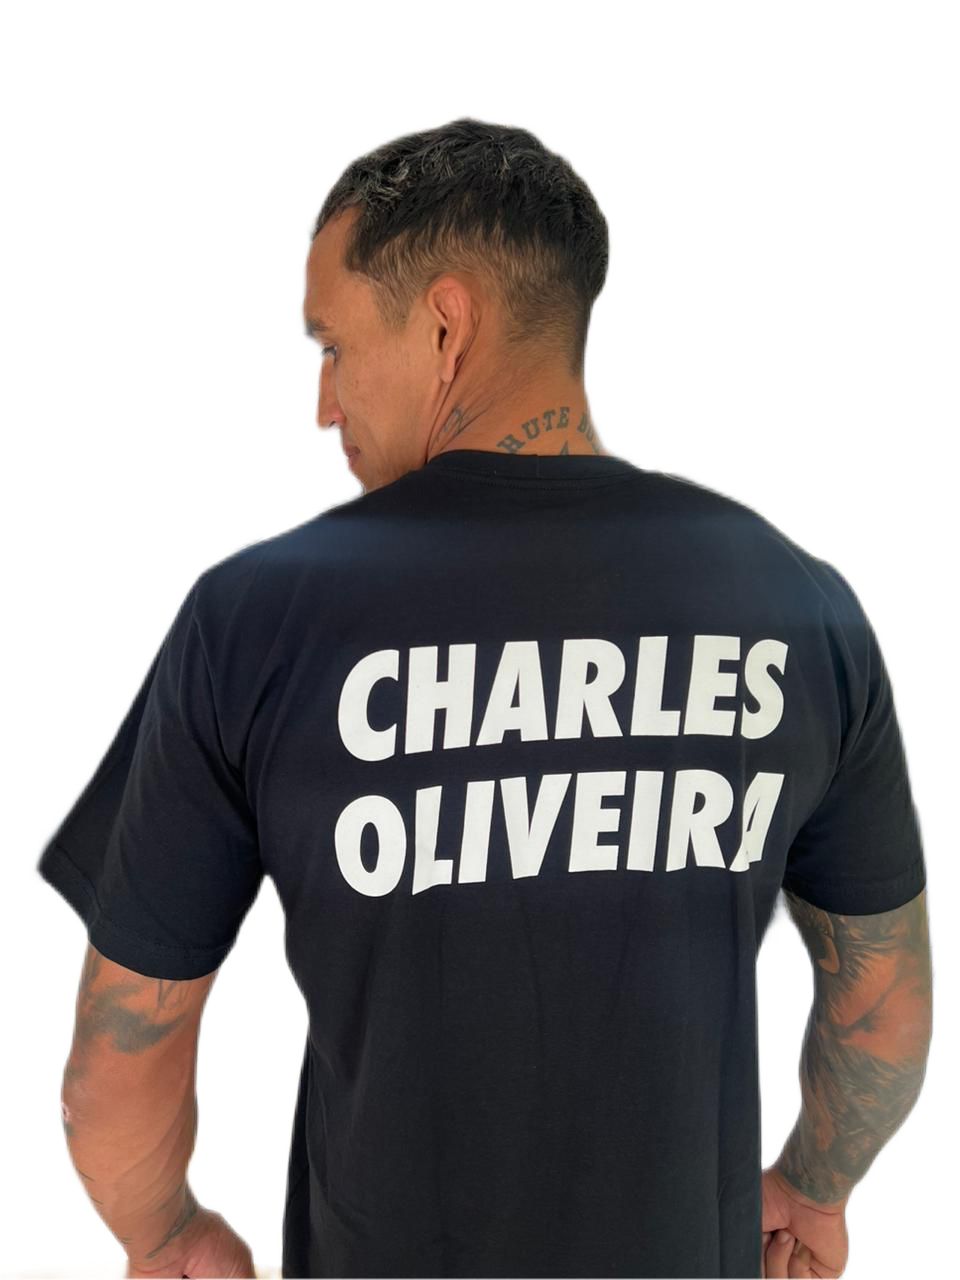 AUTOGRAFADA - Camiseta Charles Do Bronxs - PROBLEMA DA DIVISAO